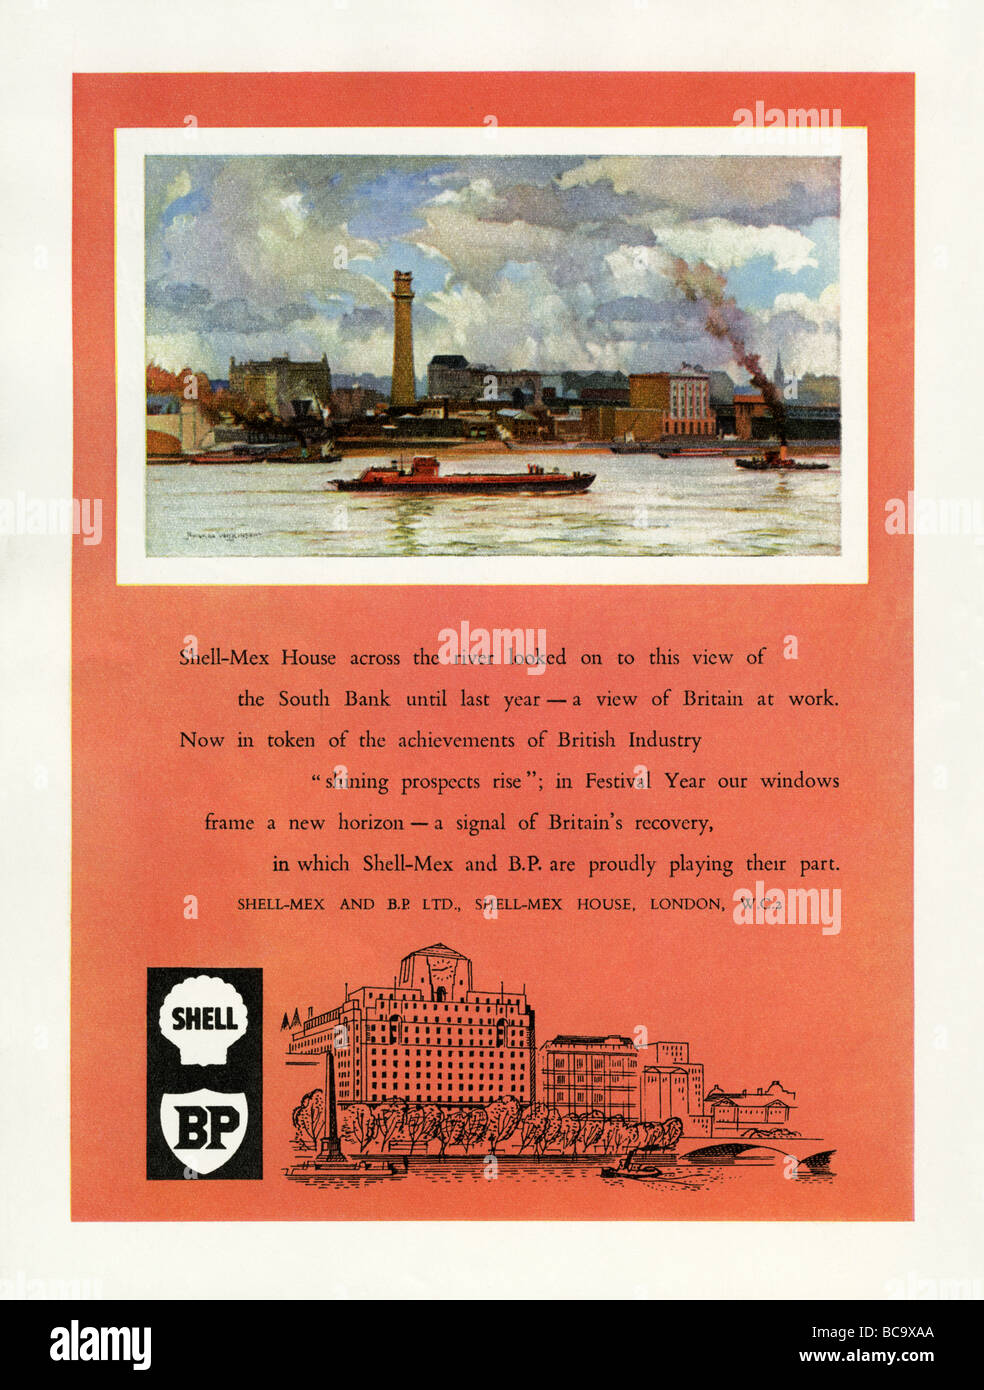 1951 Farbe Werbung für Shell und BP mit Shell-Mex Haus und 1950 Blick über die Themse am Bahndamm Stockfoto